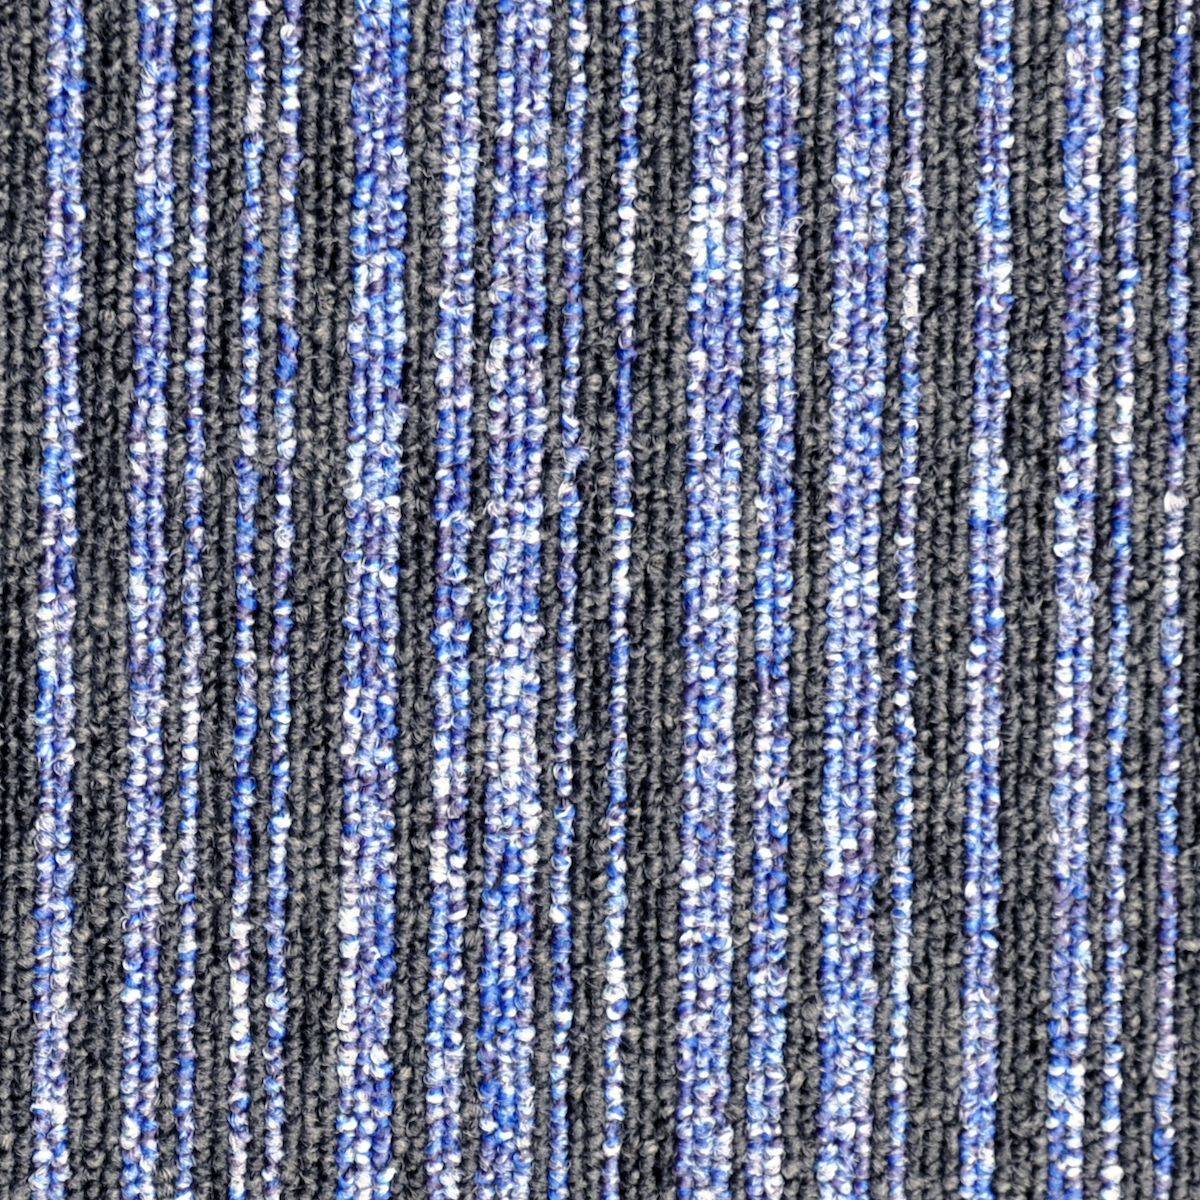 Flooring Hut Peerless Carpet Tile Medium Blue Stripe